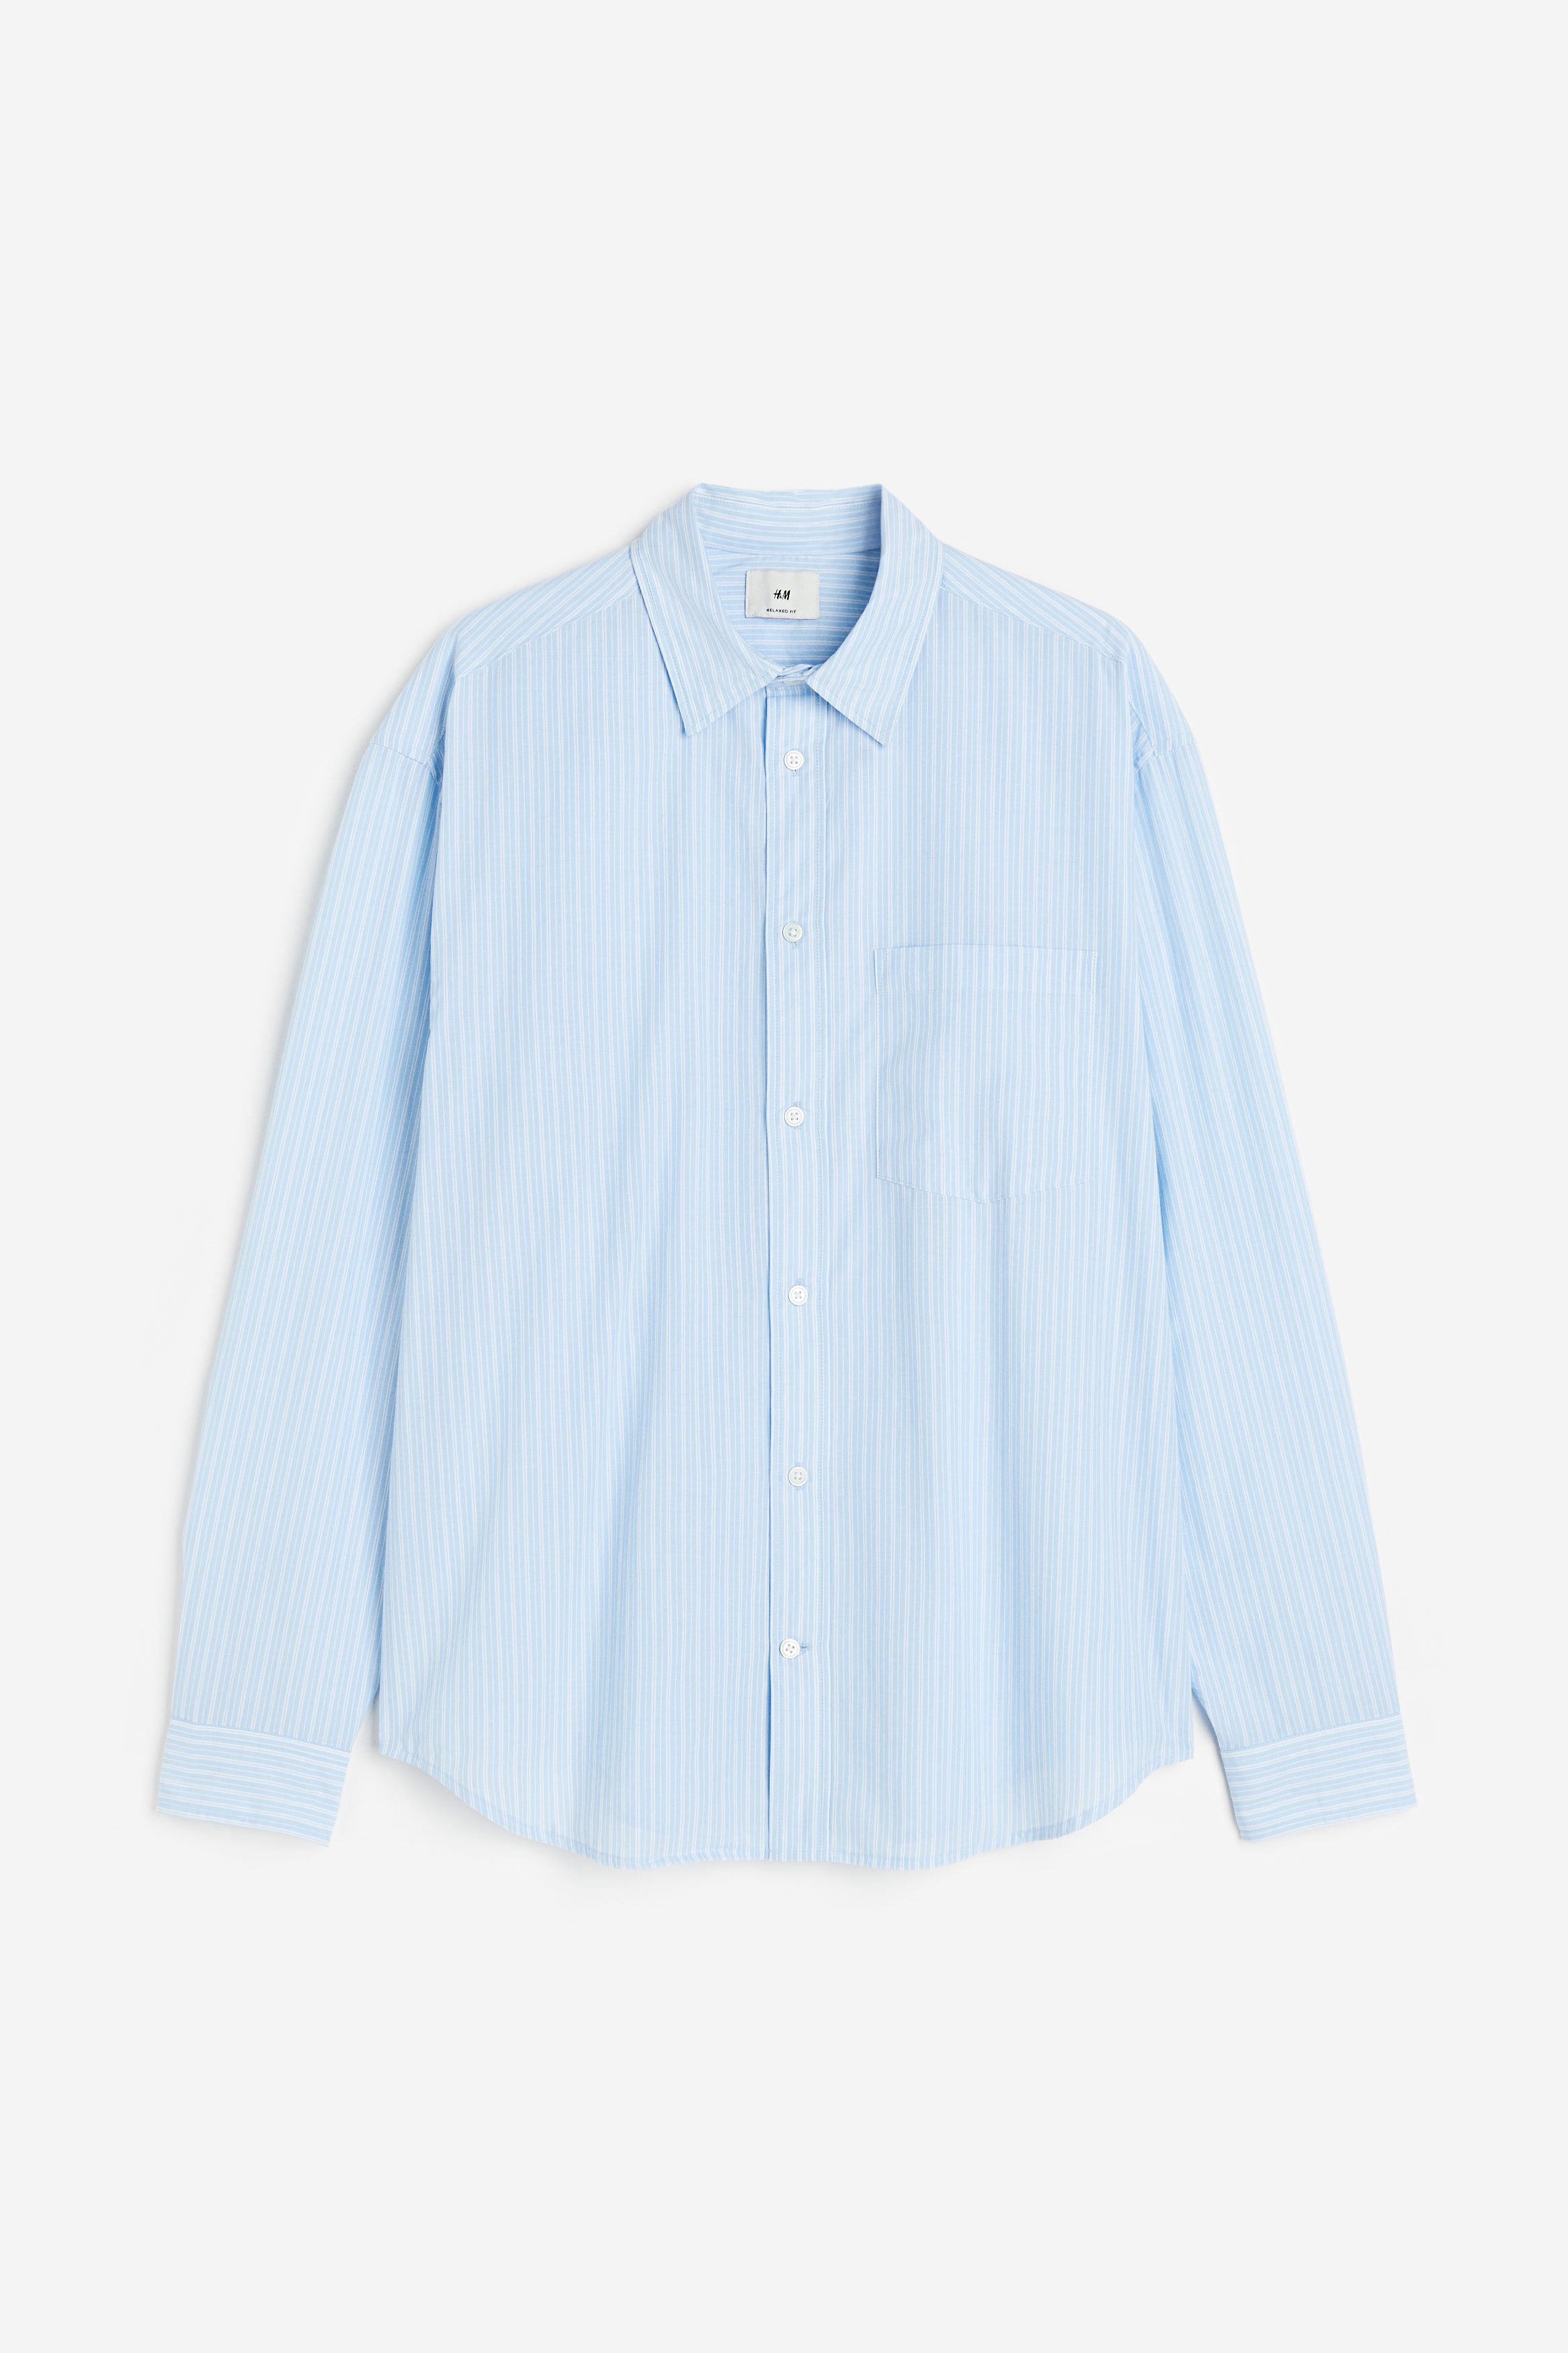 Buy Relaxed Fit Poplin shirt online in KSA